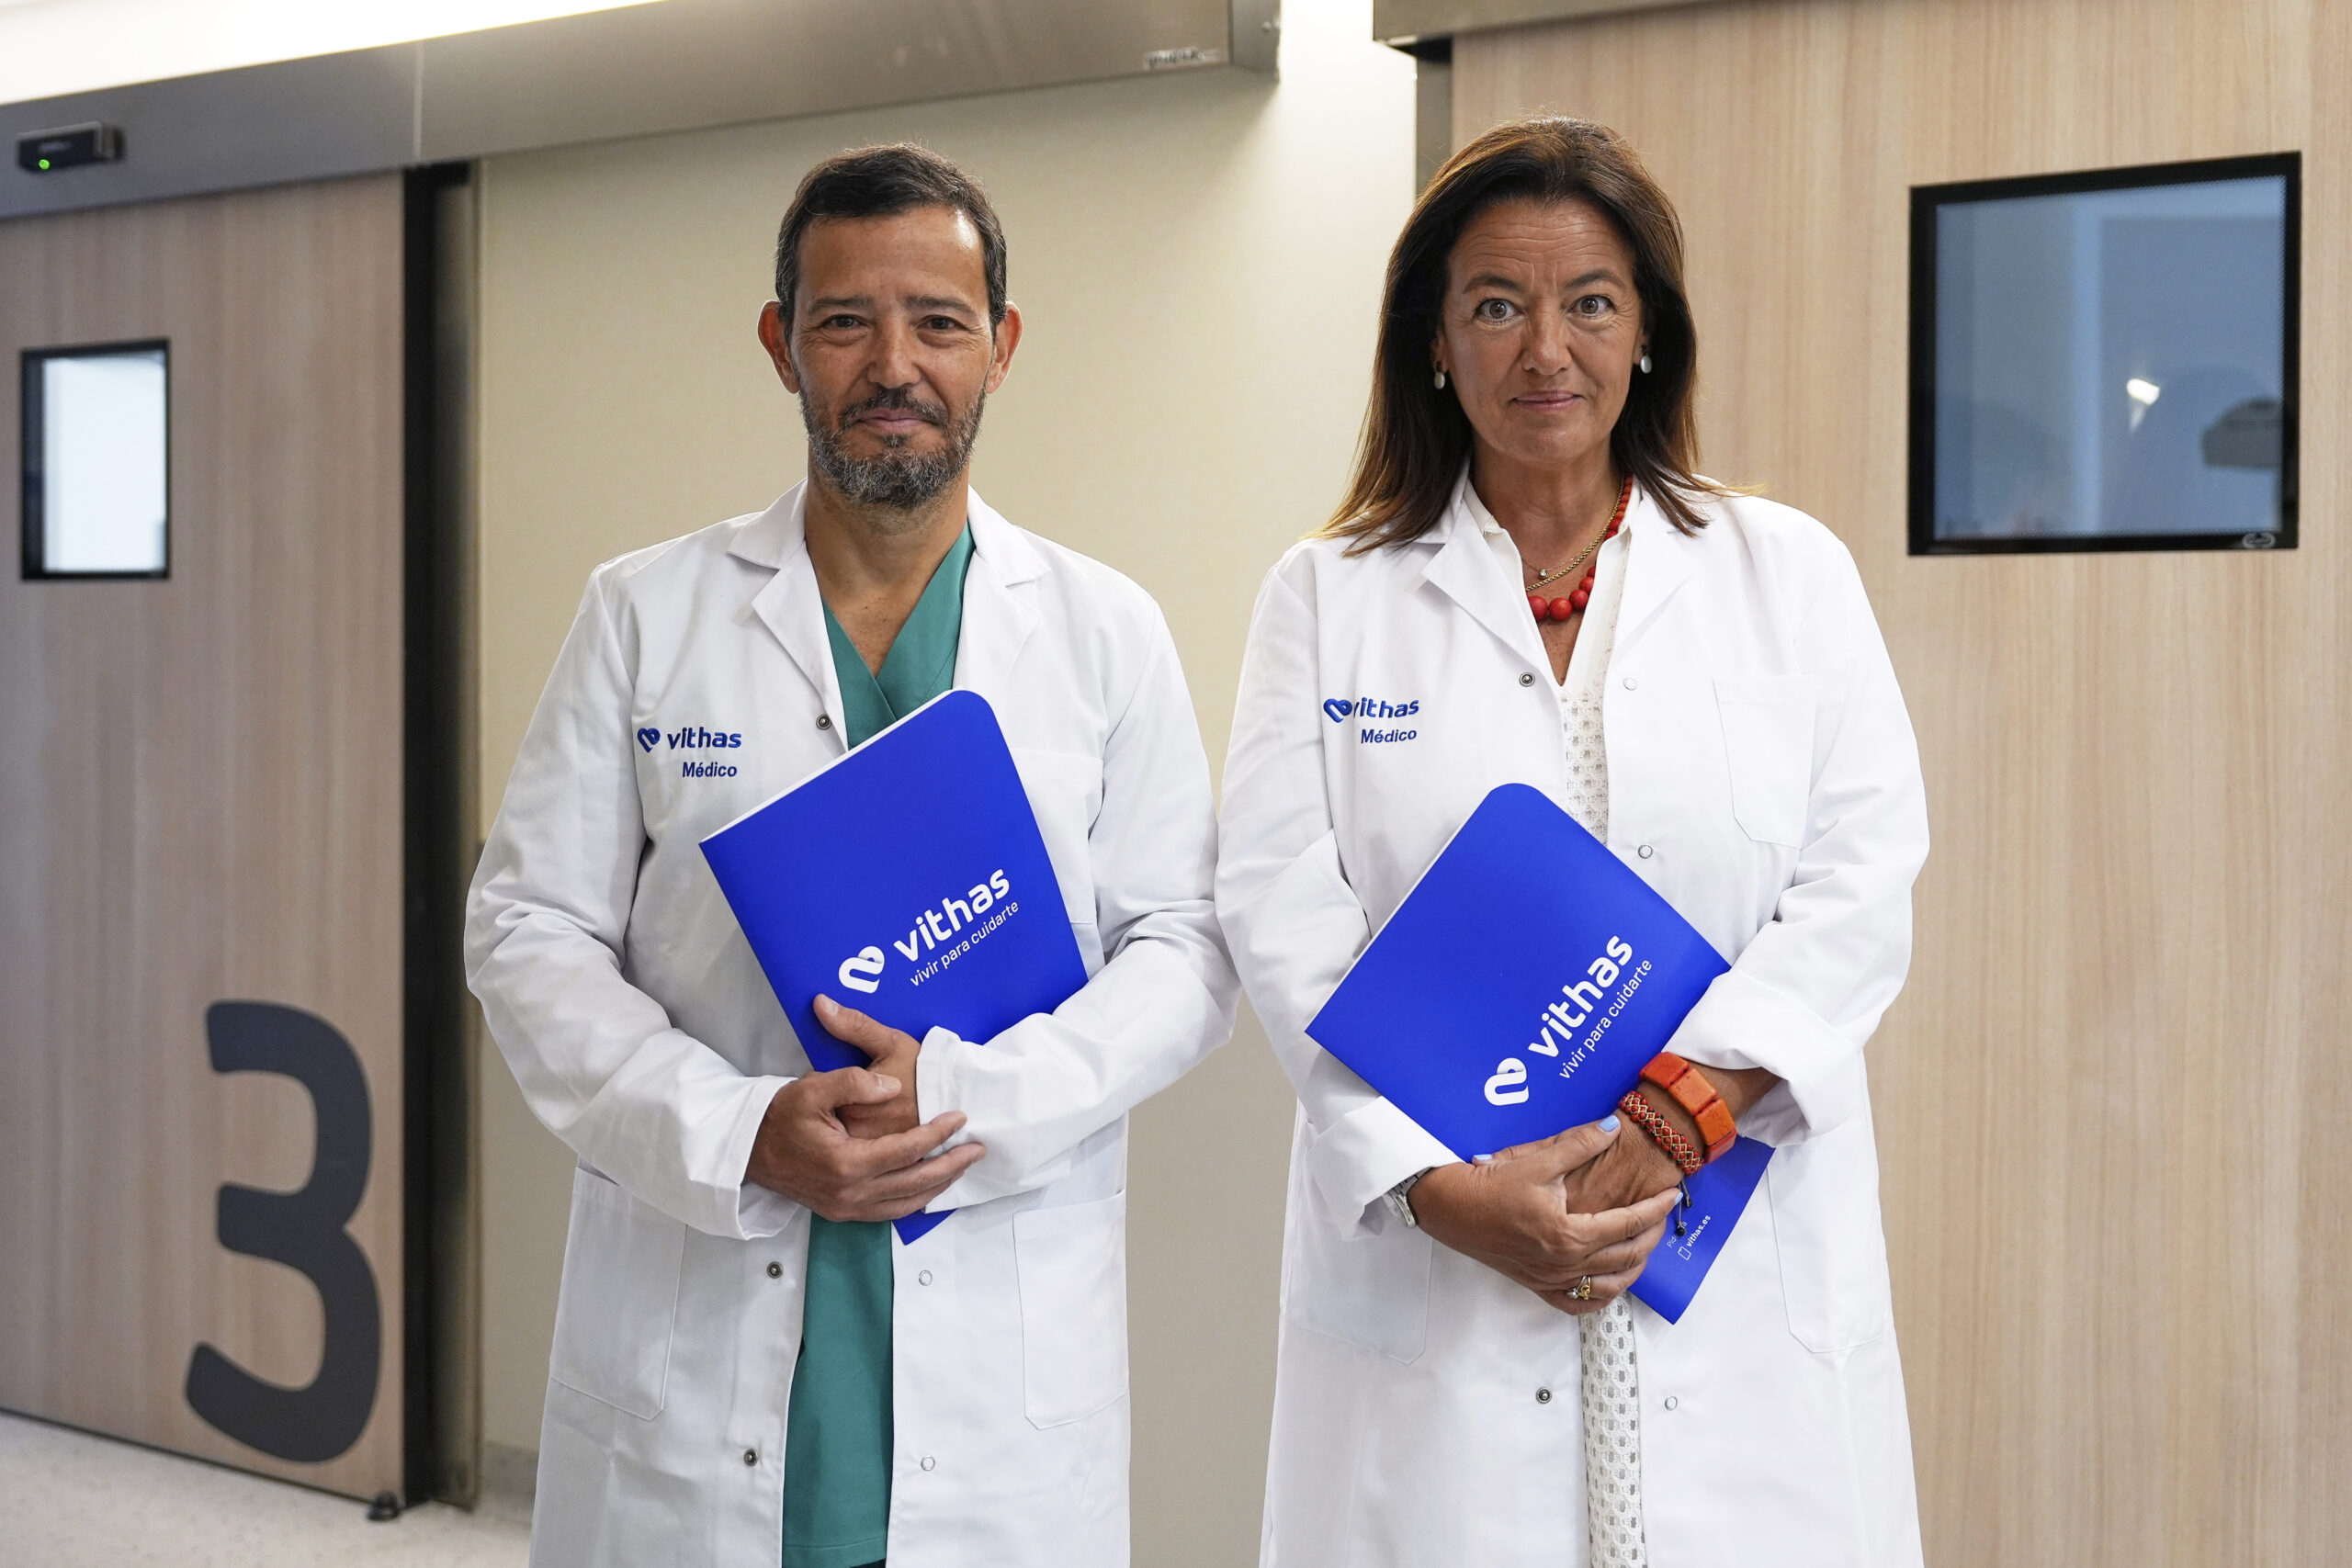 Vithas Las Palmas refuerza su liderazgo en obstetricia y ginecología con la incorporación de la Clínica Baren